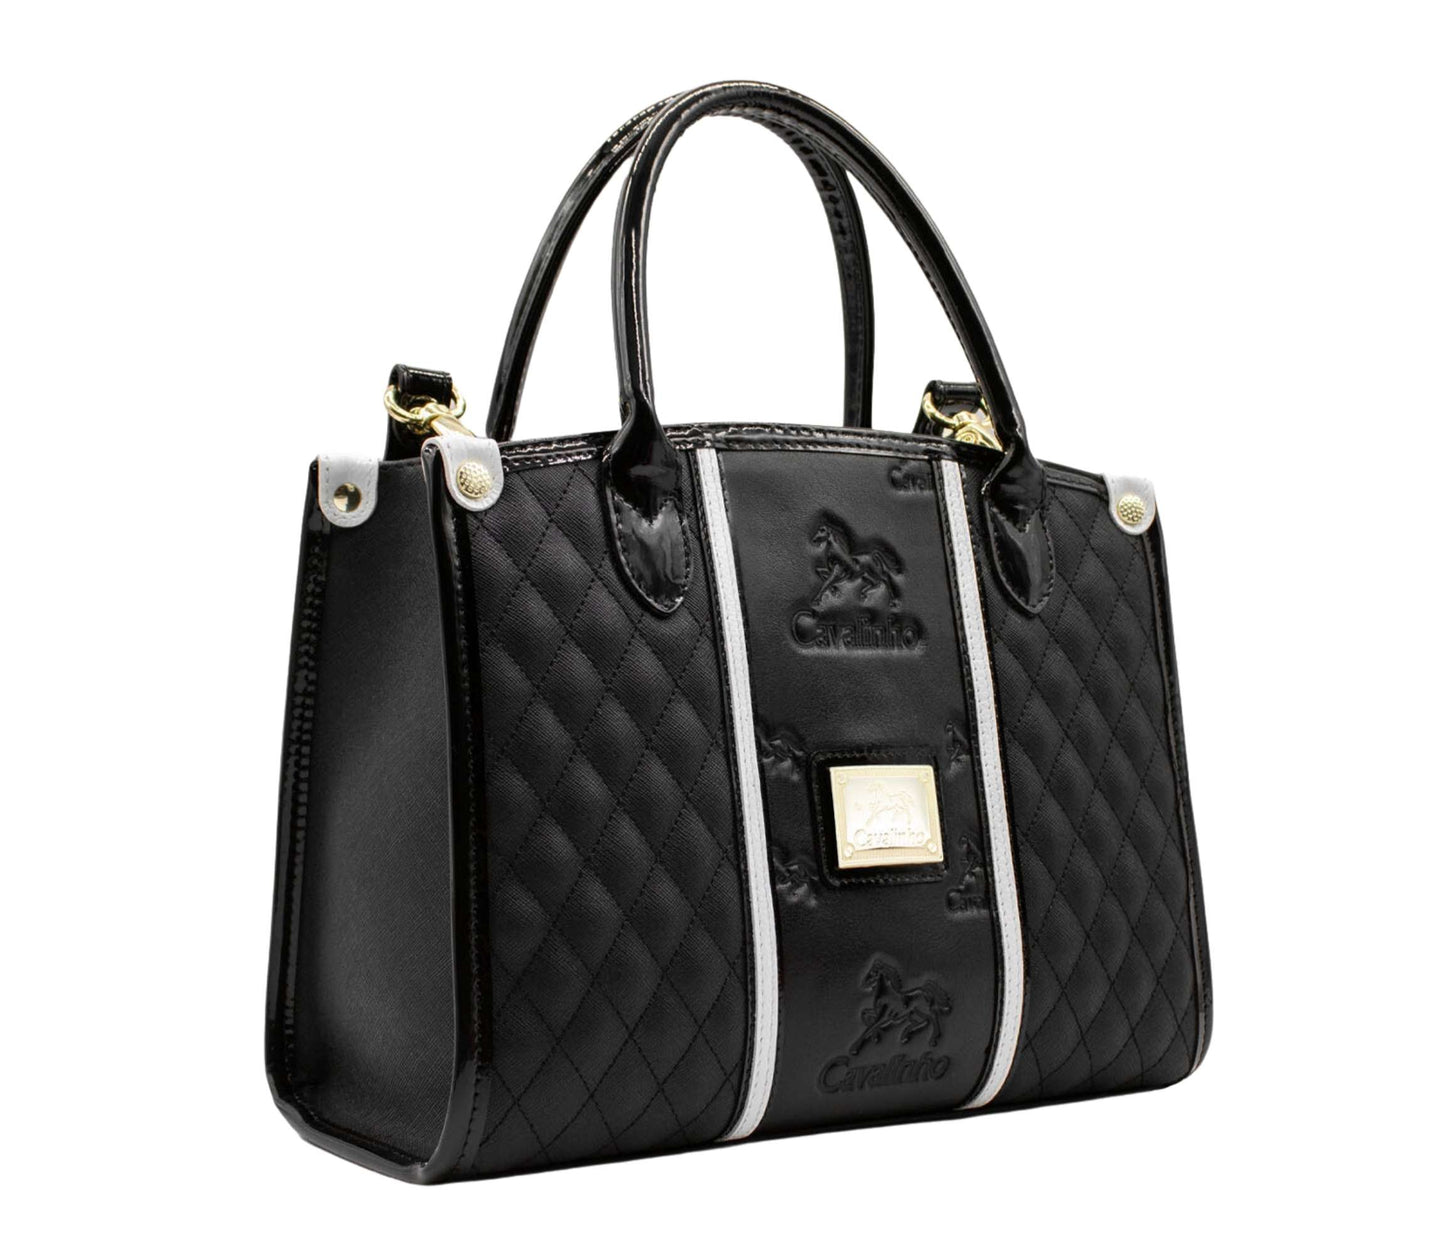 #color_ Black and White | Cavalinho Royal Handbag - Black and White - 18390480.21.99_2